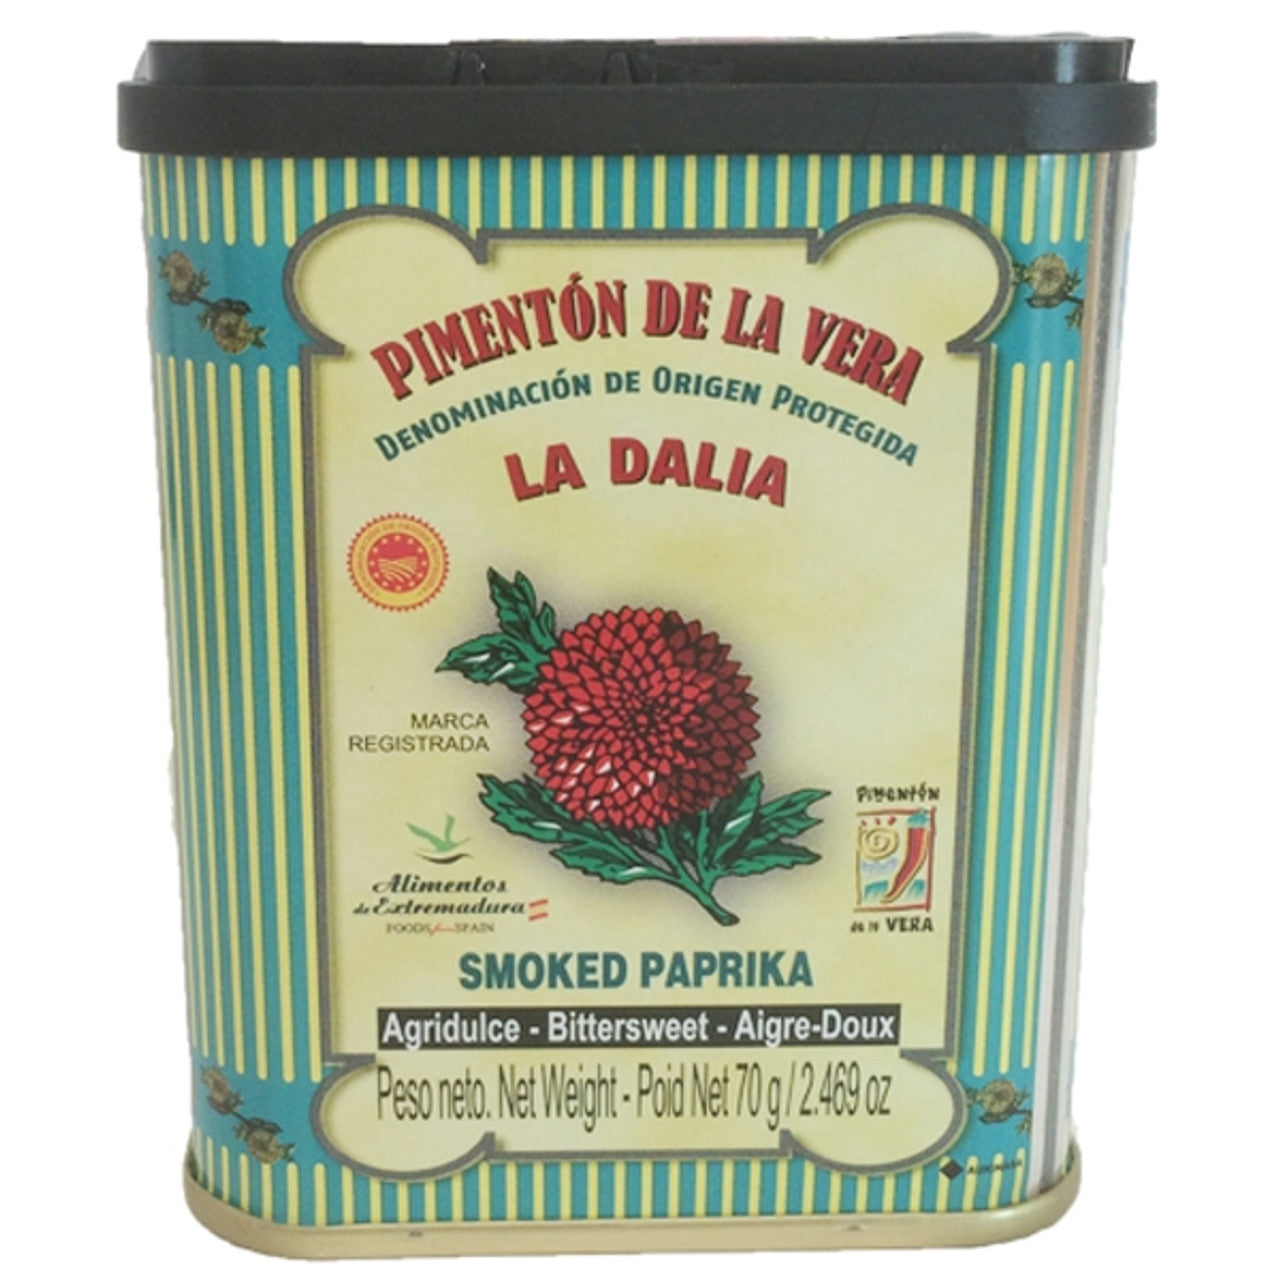 La Dalia Bittersweet Smoked Spanish Paprika Seasoning, 2.5 oz